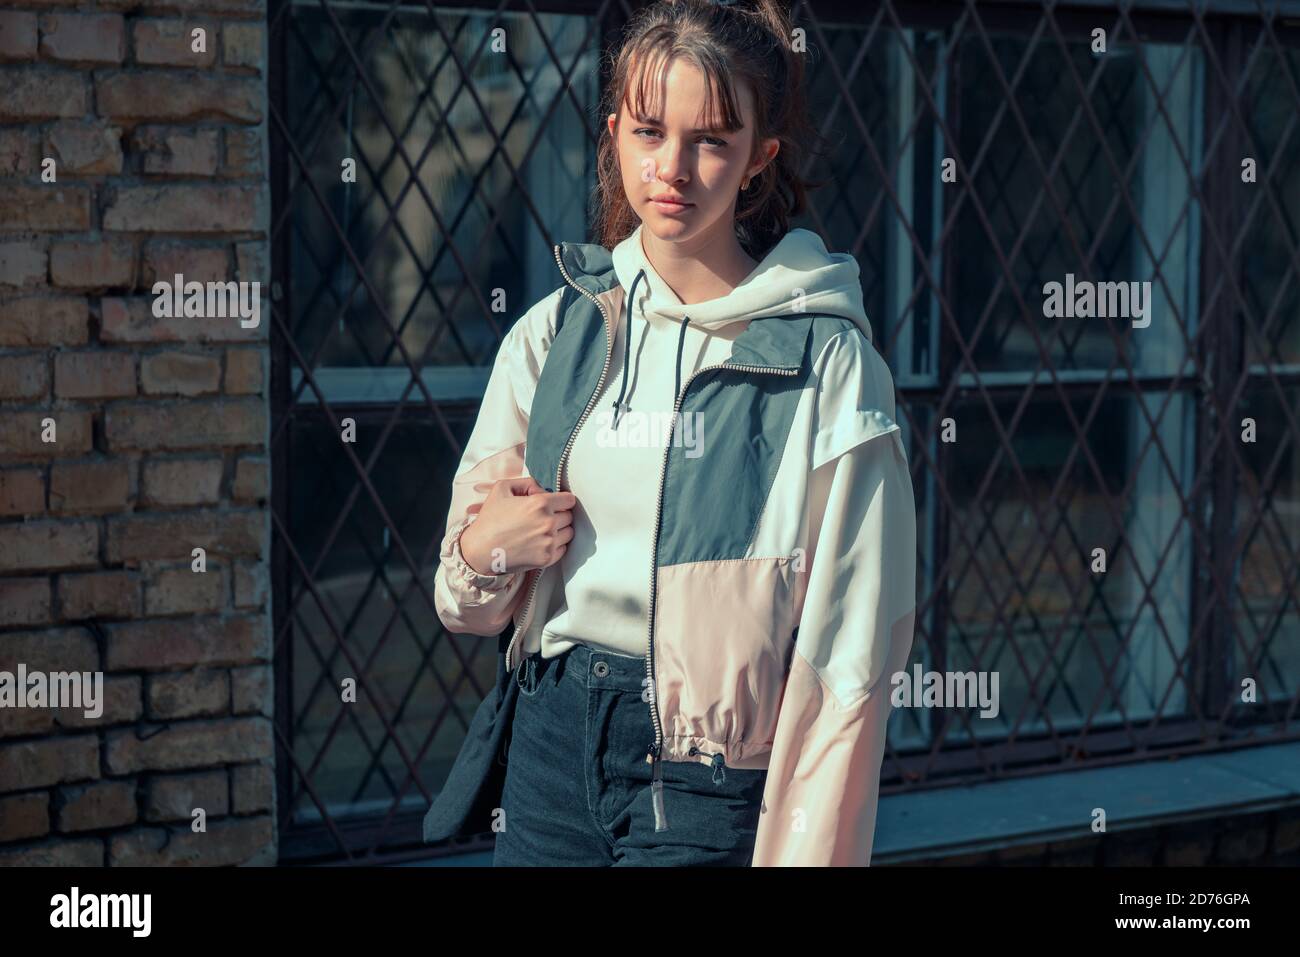 Une jeune adolescente sérieuse et réfléchie debout avec un sac de livre sur son épaule devant un bâtiment urbain regarder l'appareil photo en silence Banque D'Images